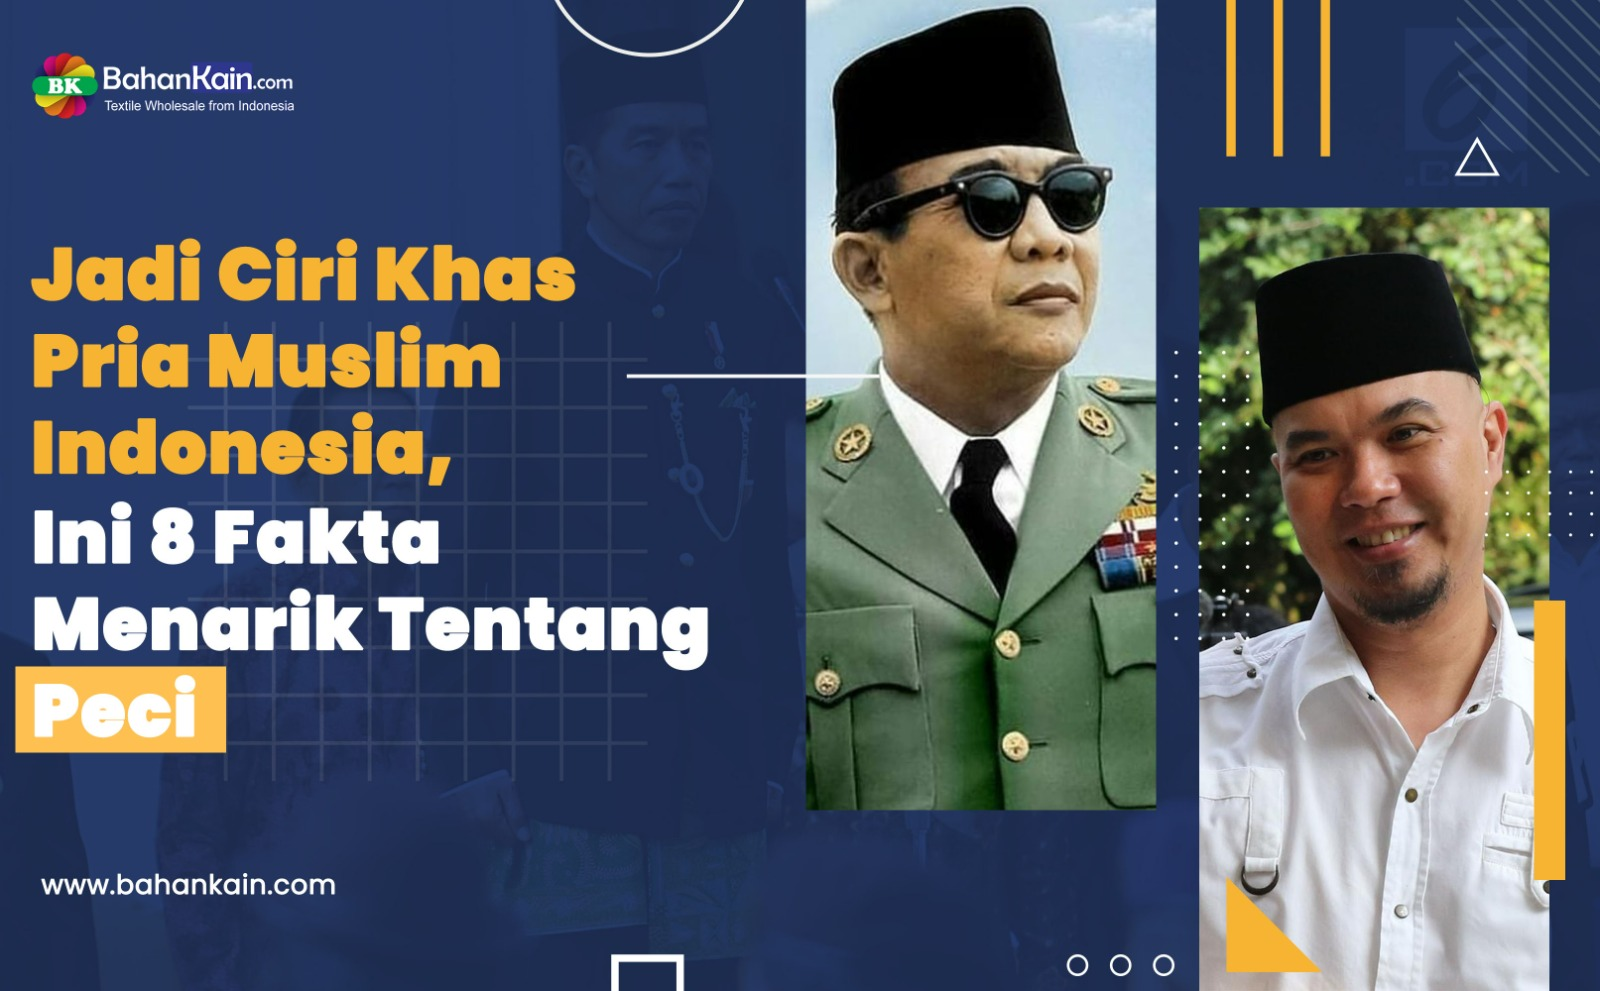 Jadi Ciri Khas Pria Muslim Indonesia, Ini 8 Fakta Menarik Tentang Peci 